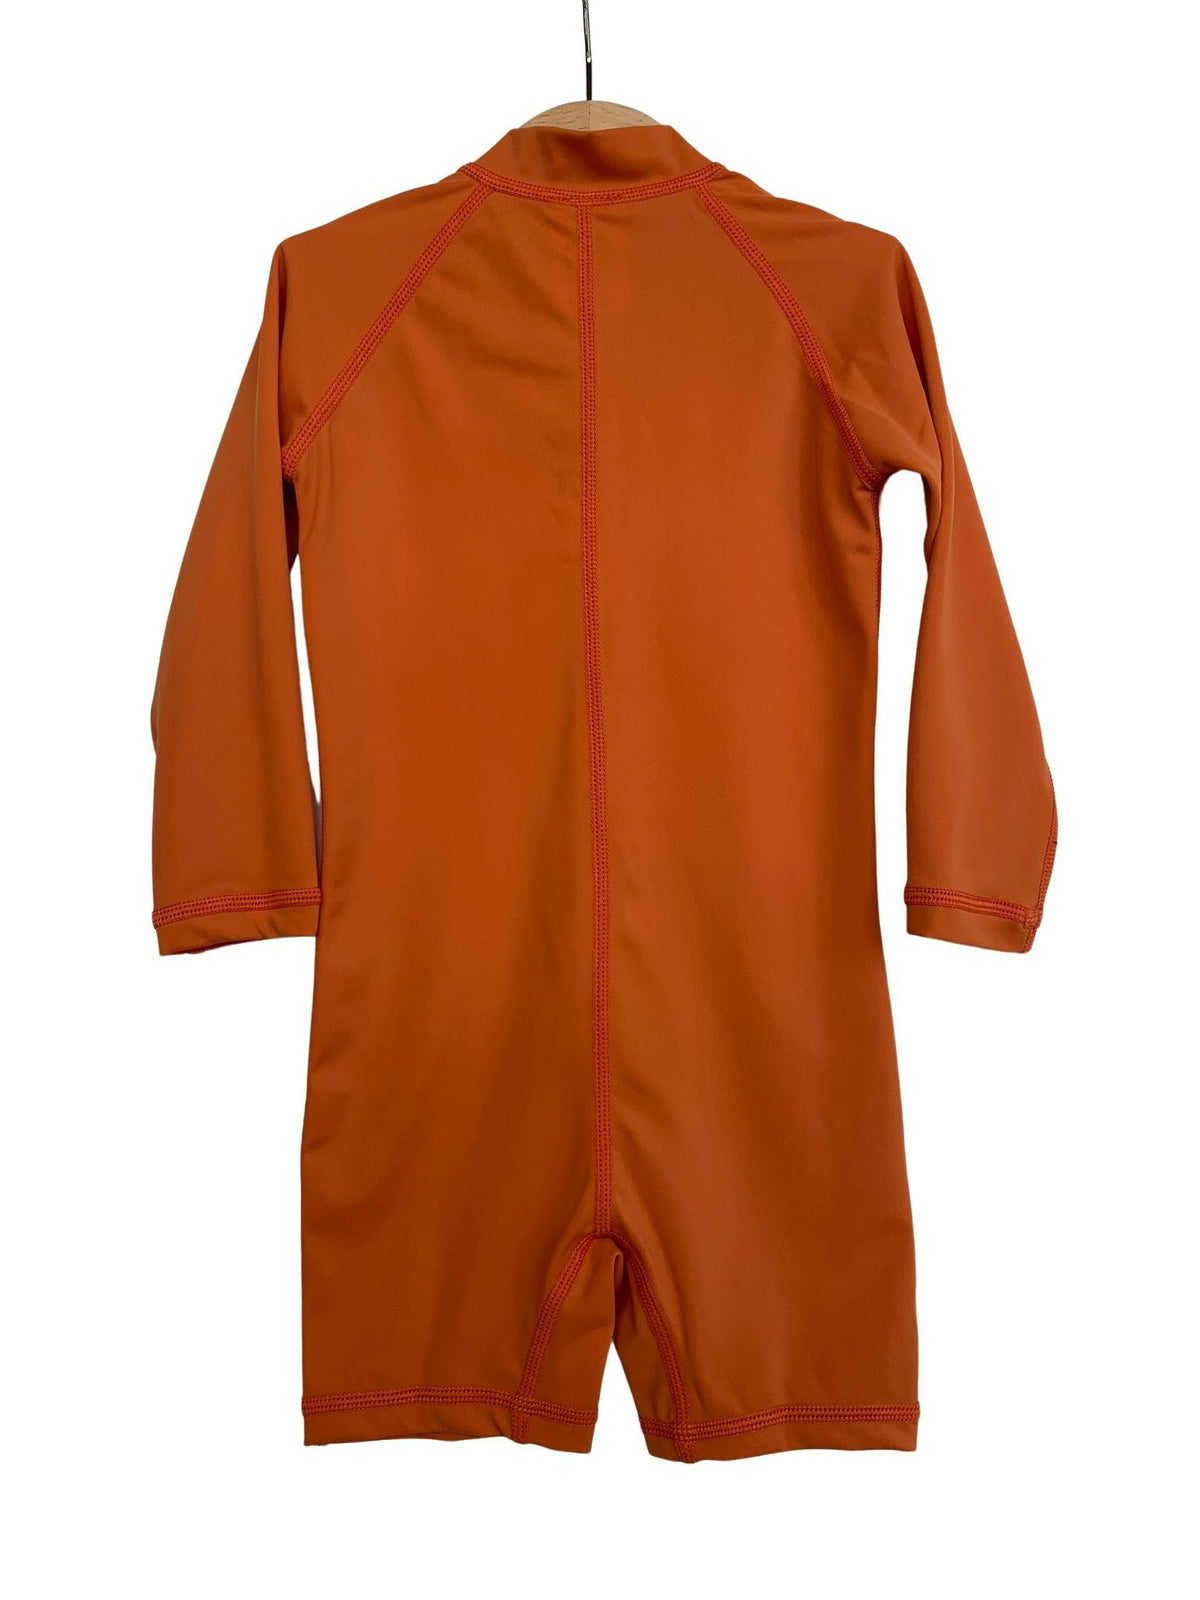 Kicky Swim - One Piece Rashguard Suit | Rust Orange